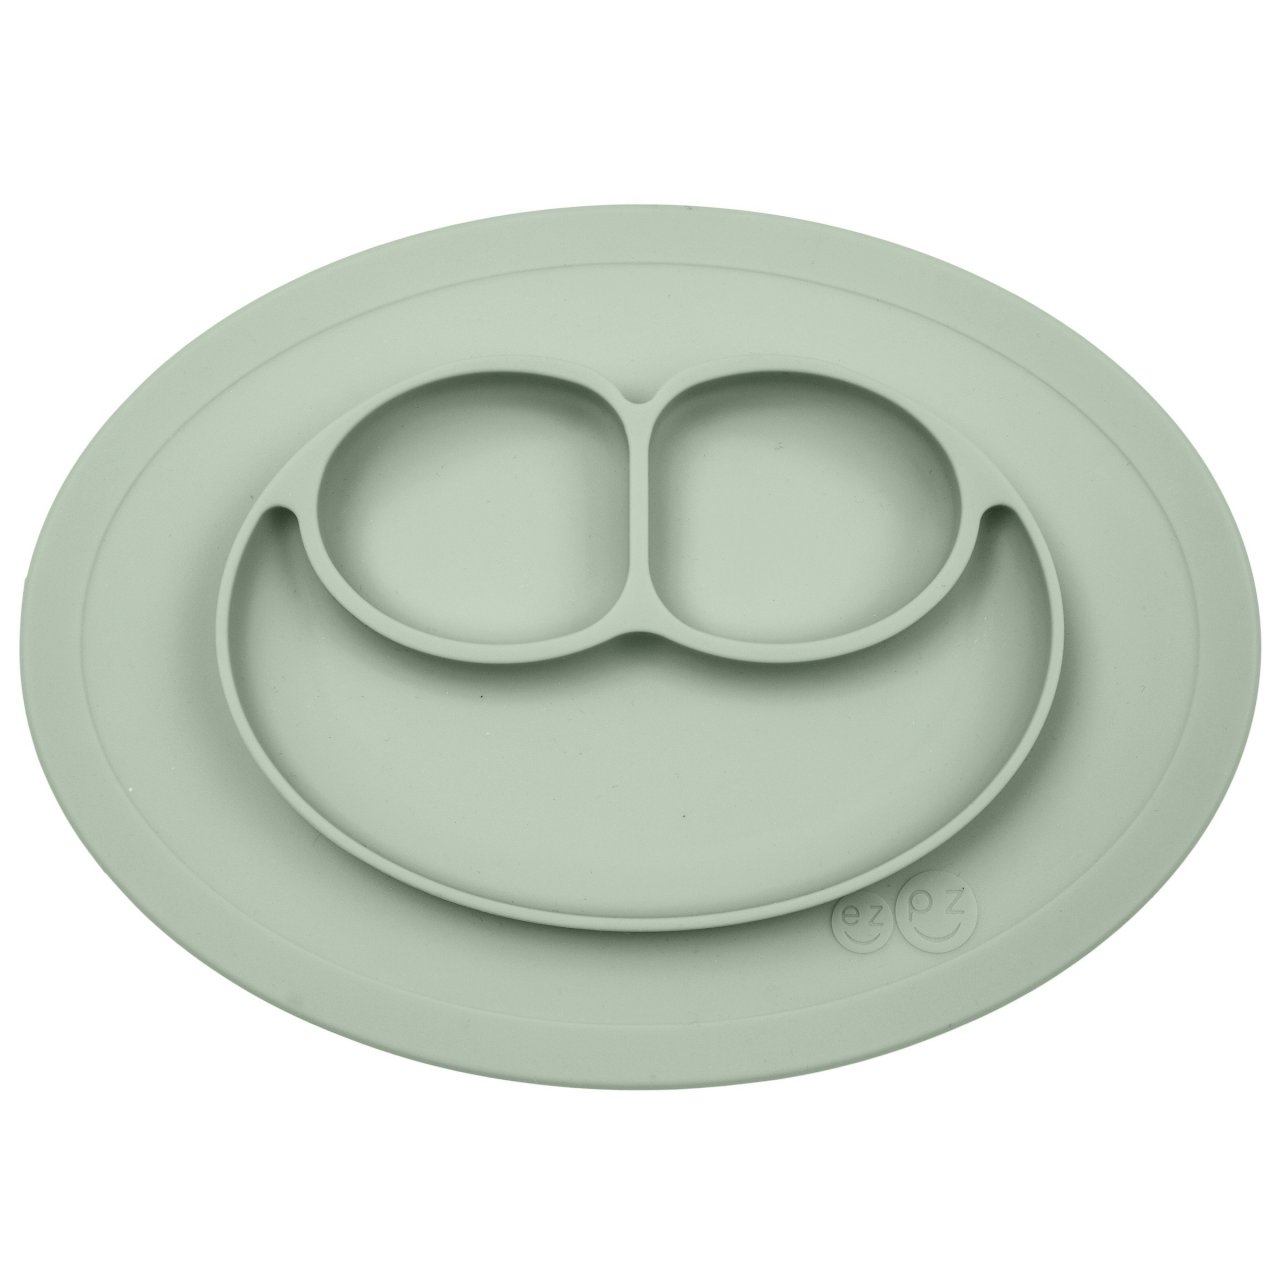 Силиконовая тарелка-плейсмат ezpz mini mat, цвет: оливковый фото